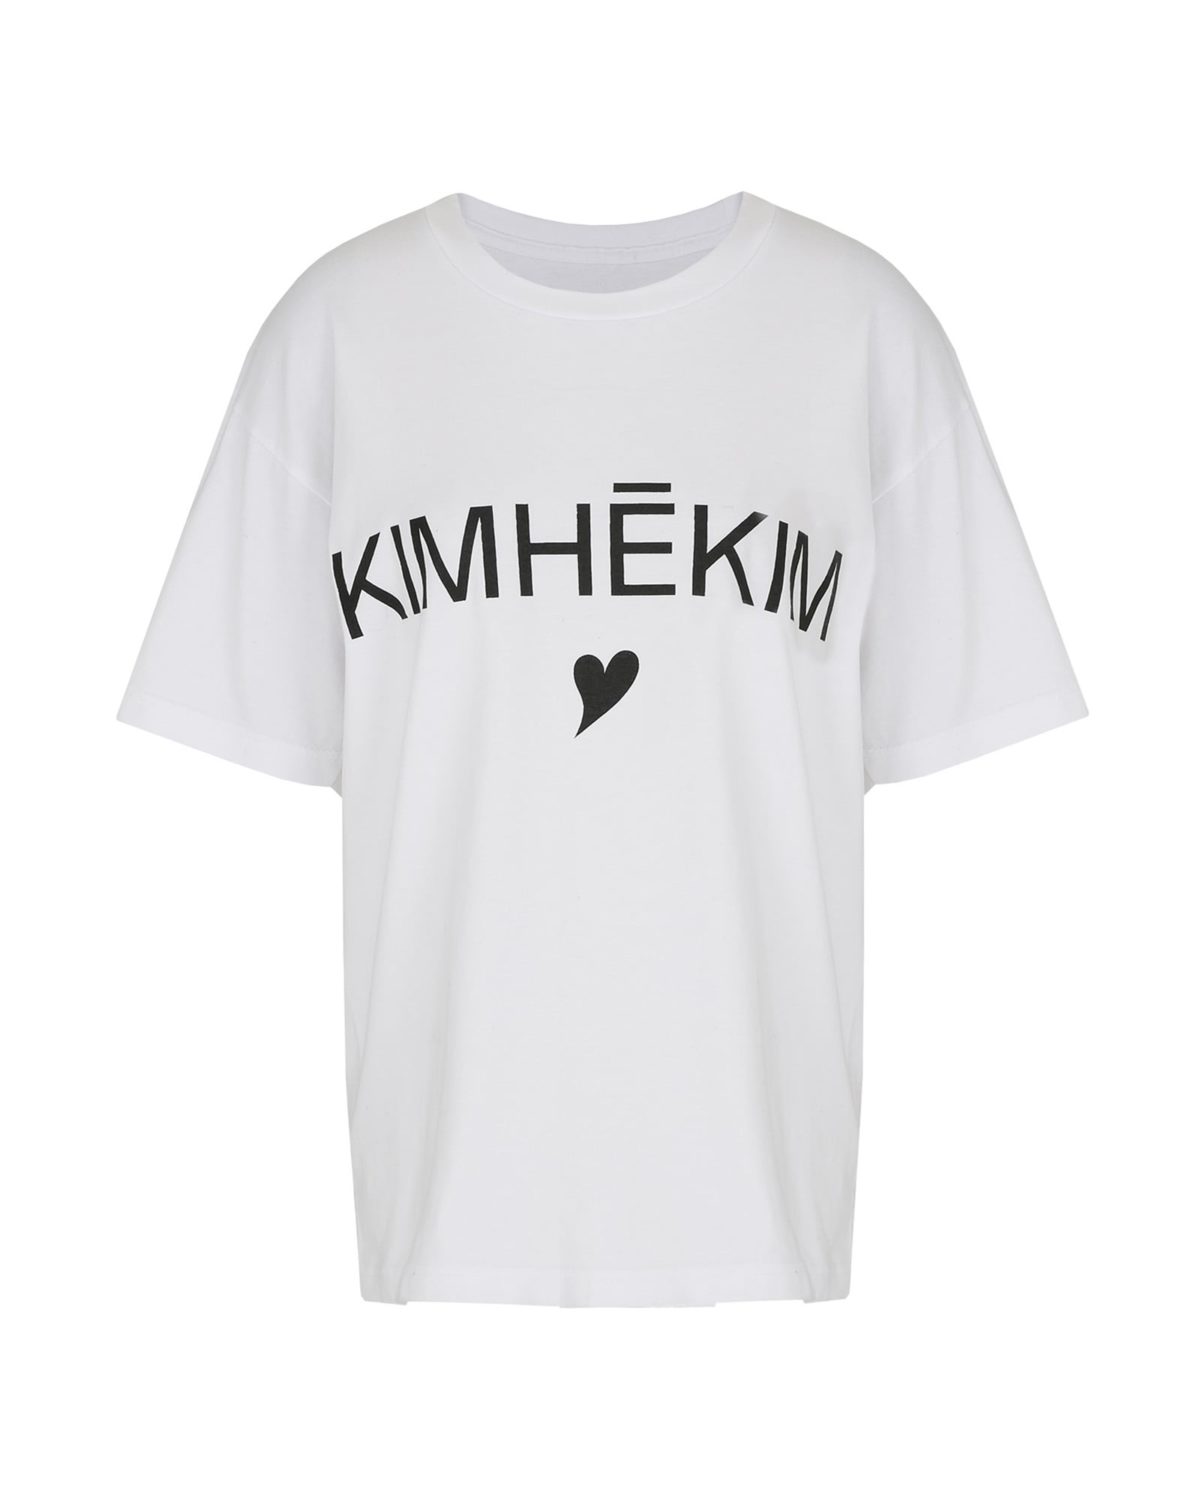 Kimhekim Heart T-Shirt